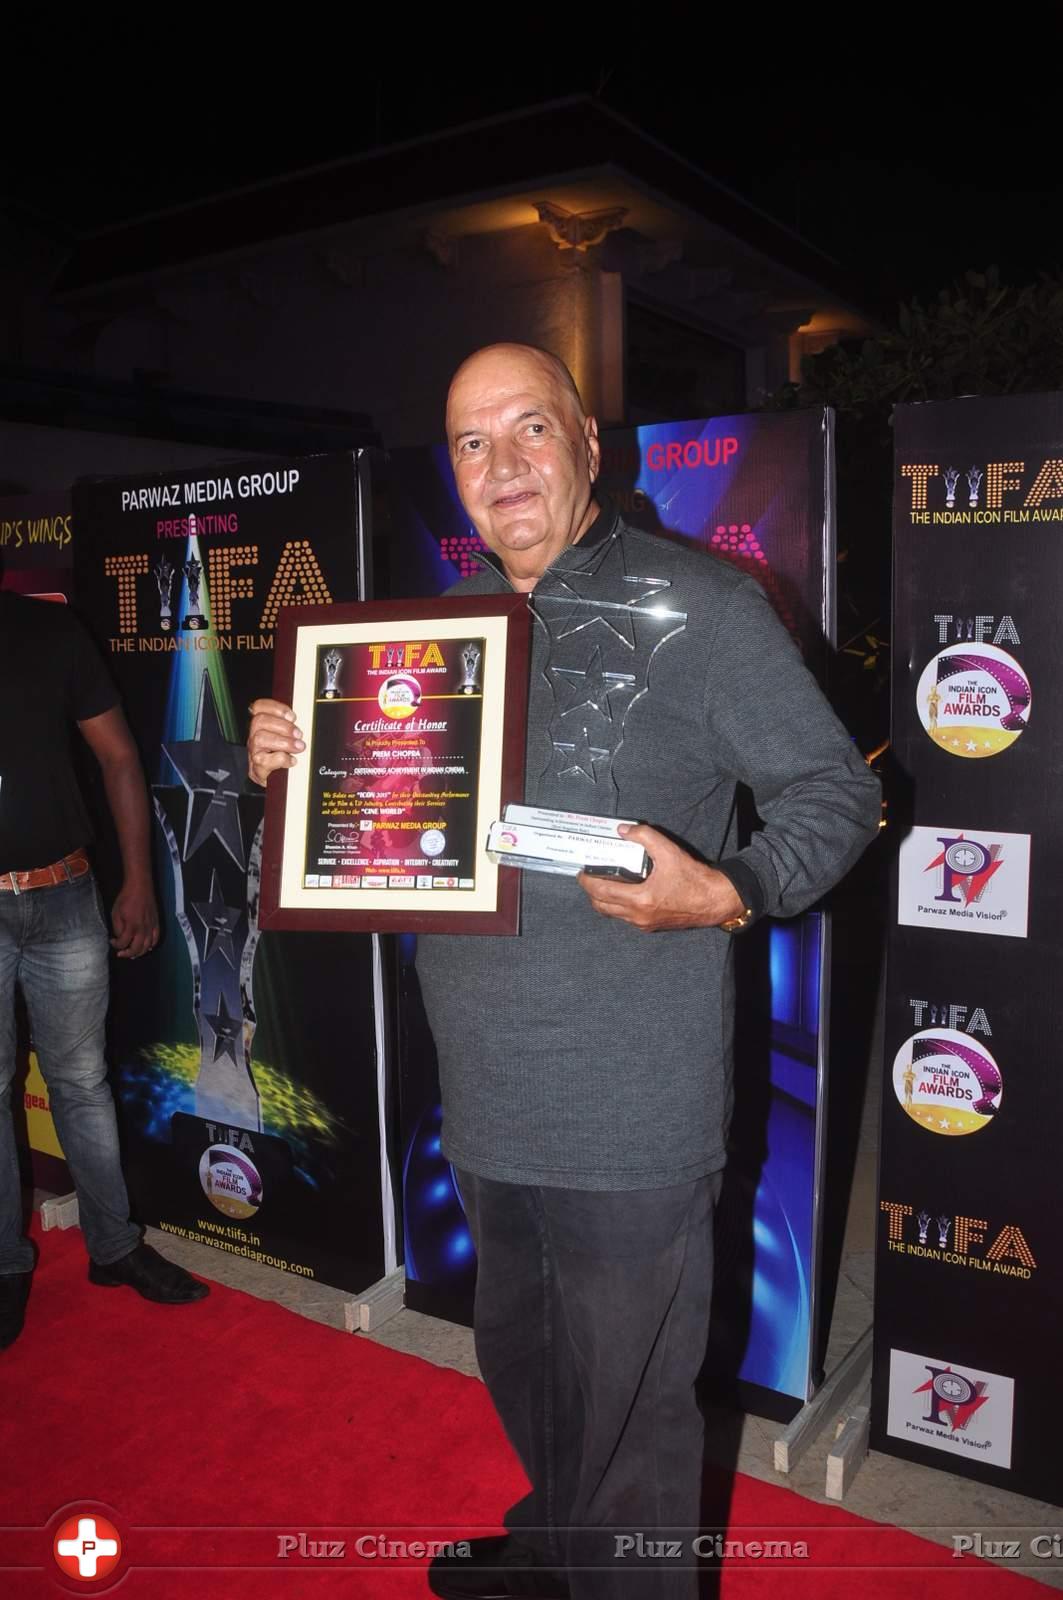 Gauhar Khan & Ekta Kapoor at TIFA Awards Stills | Picture 1130480